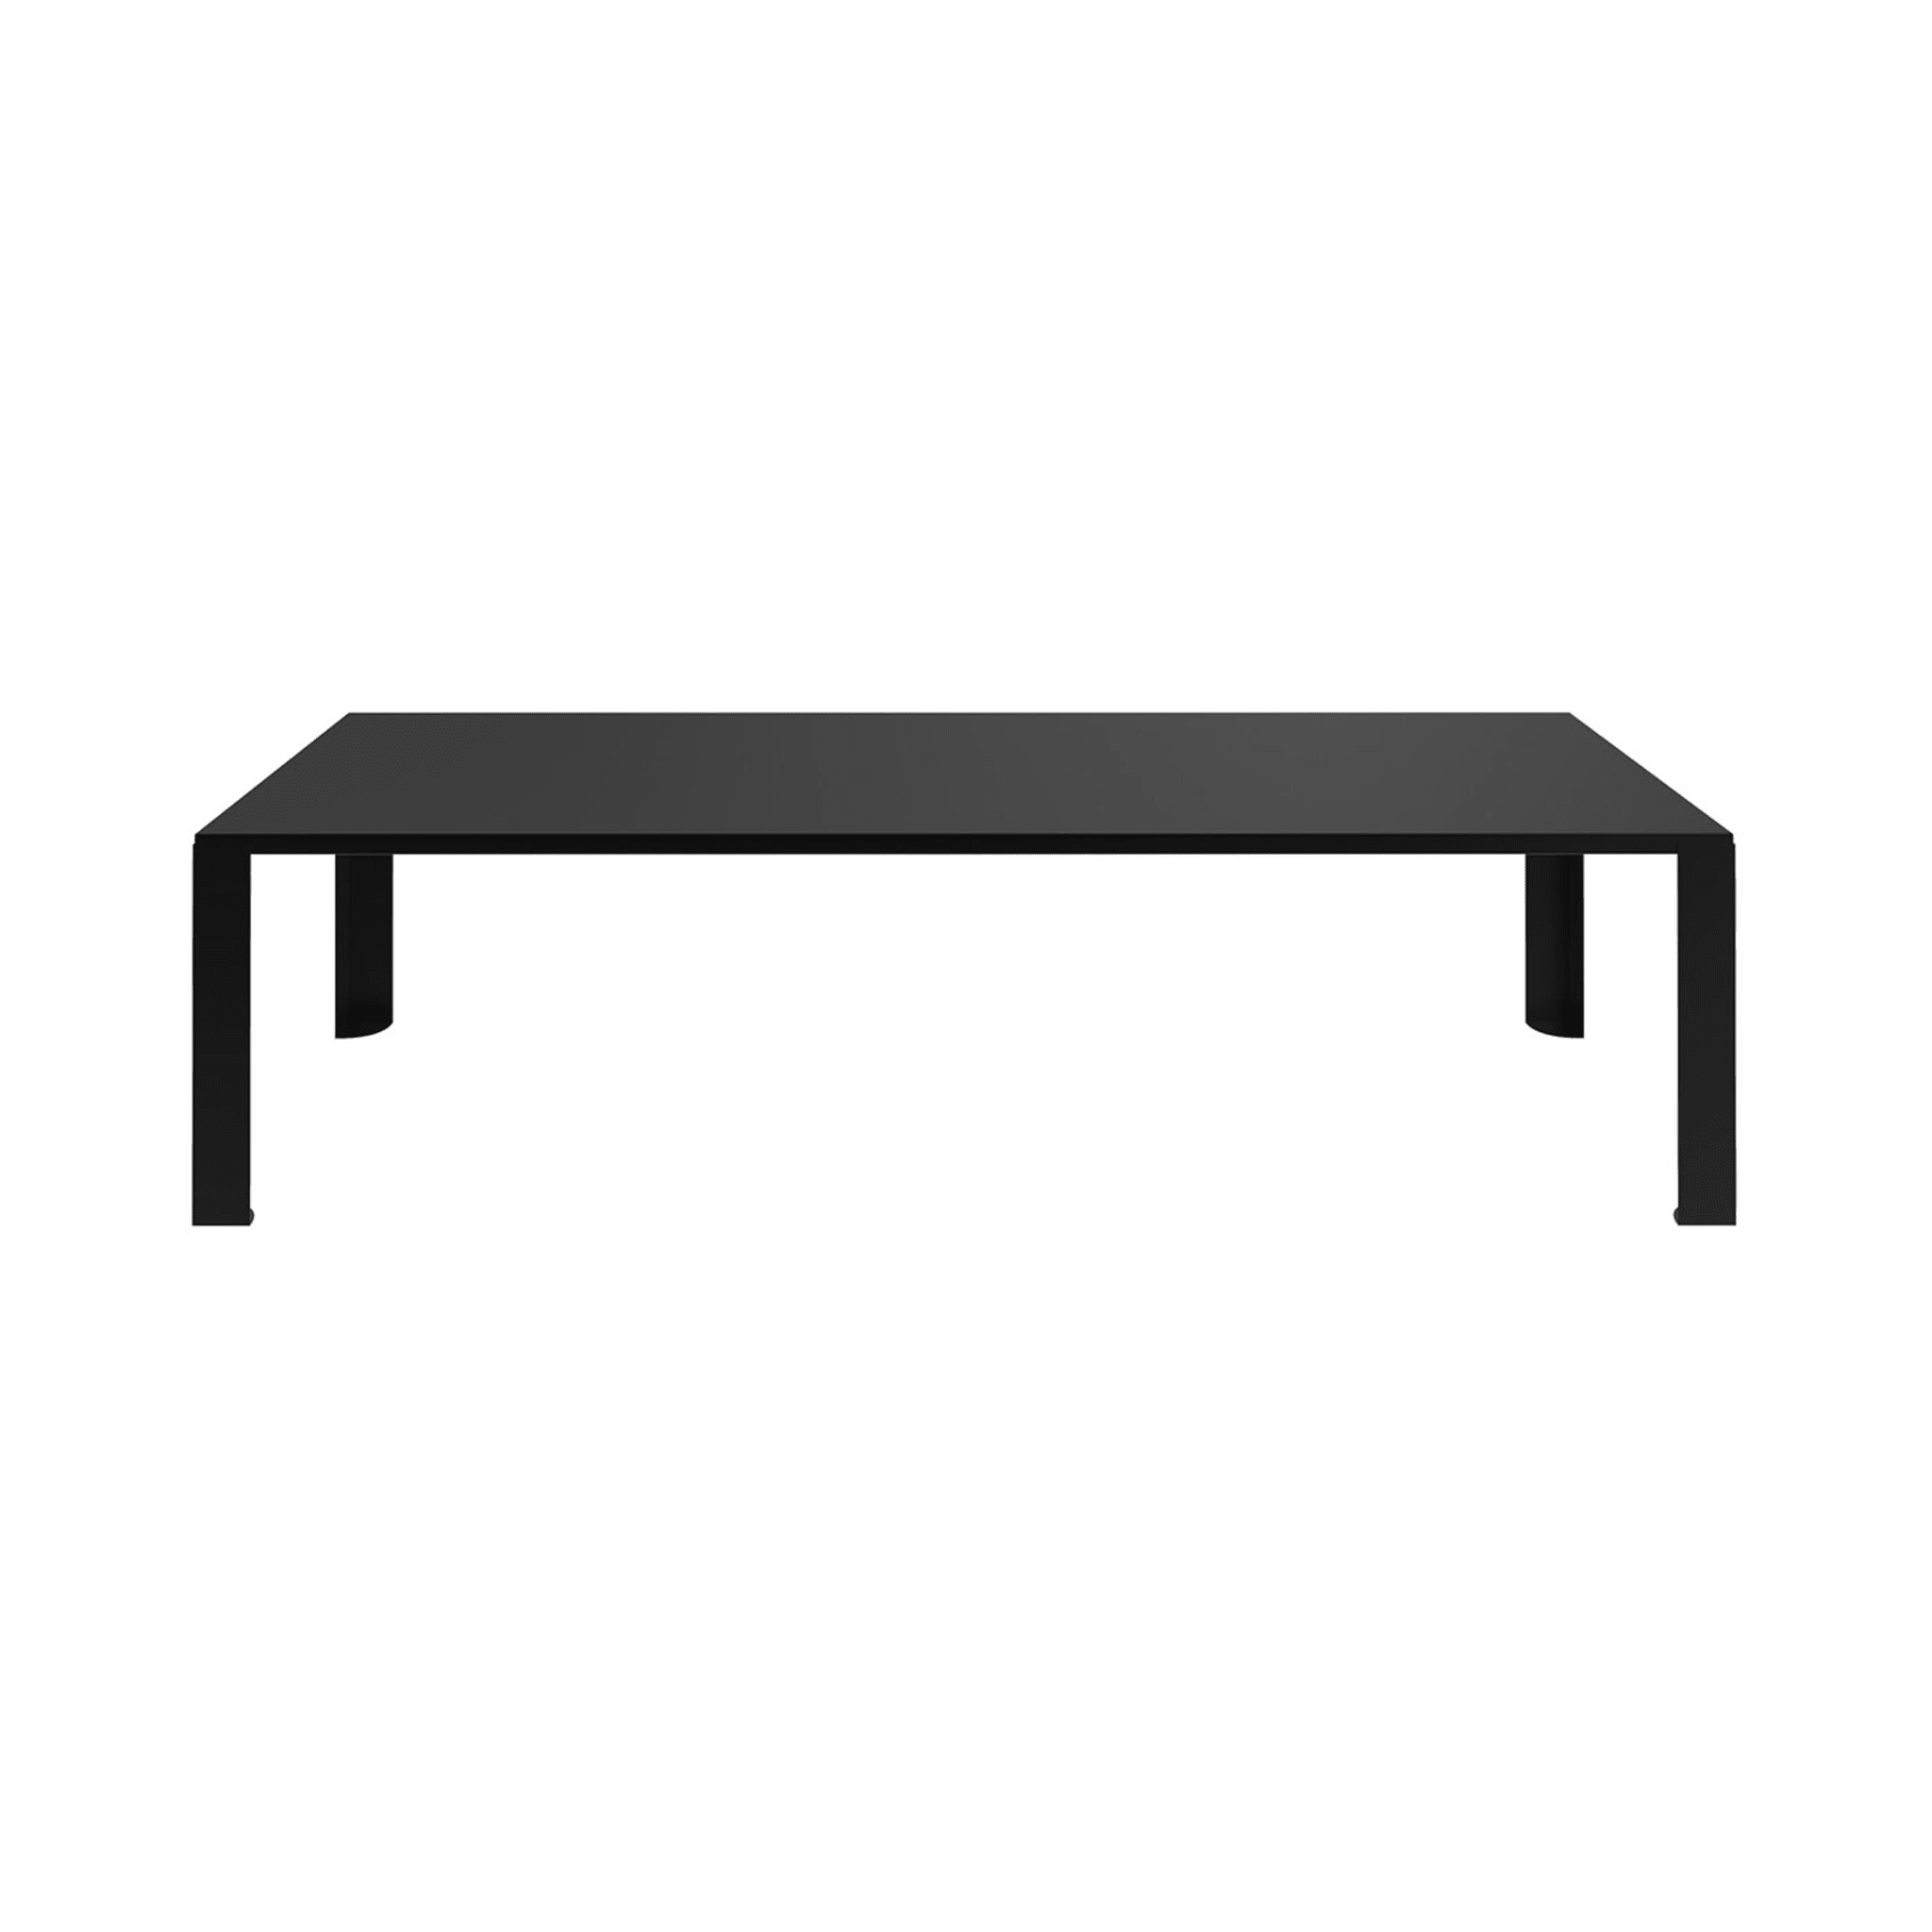 Big Irony Table rectangulaire noire par Maurizio Peregalli  - Vue principale